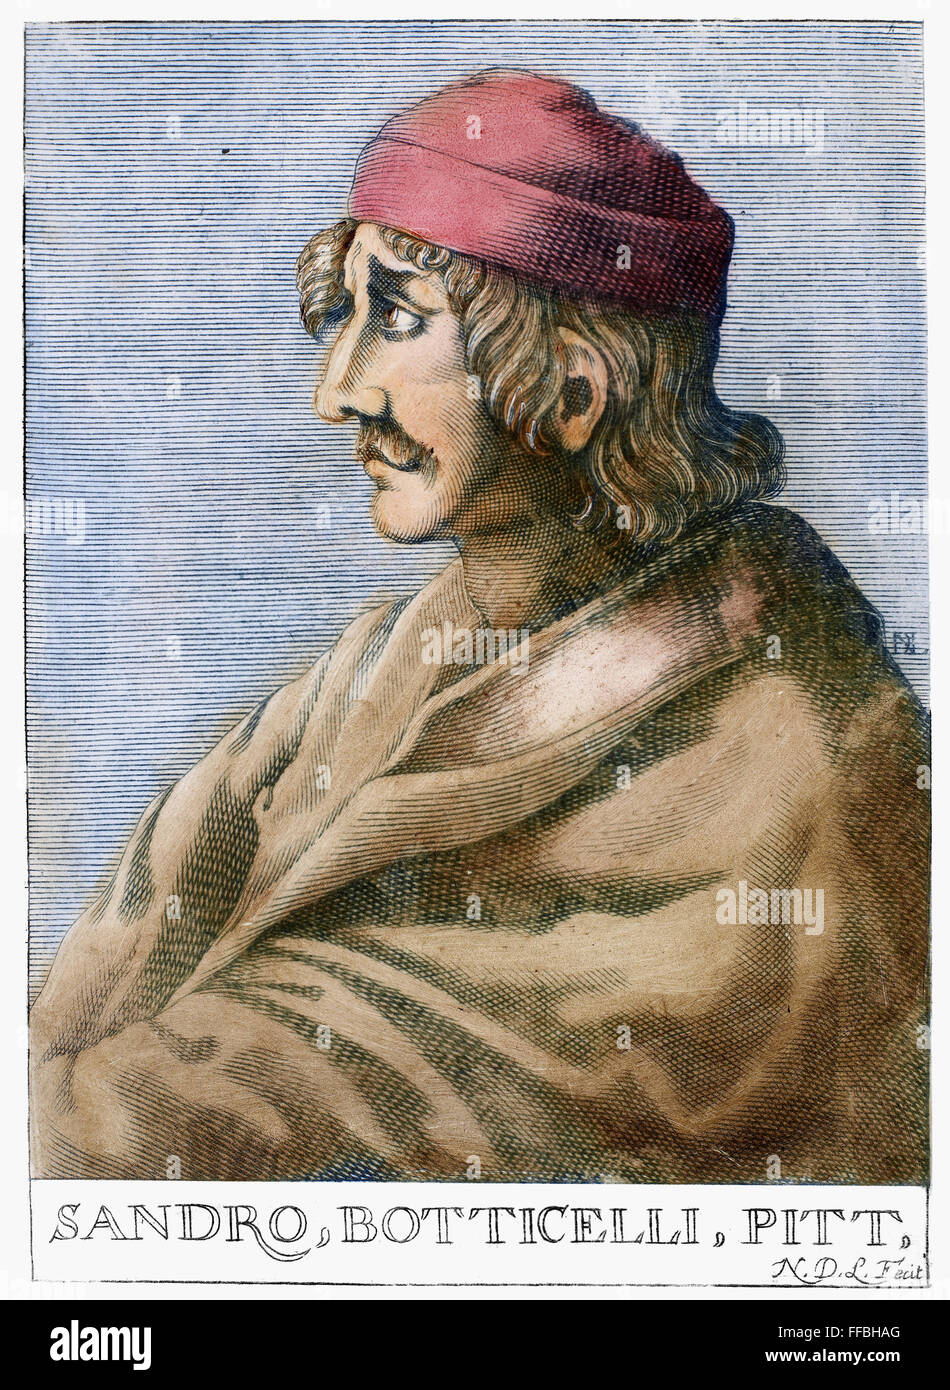 SANDRO BOTTICELLI (1445-1510). /NFlorentine pittore. Incisione su rame, francese del XVII secolo. Foto Stock